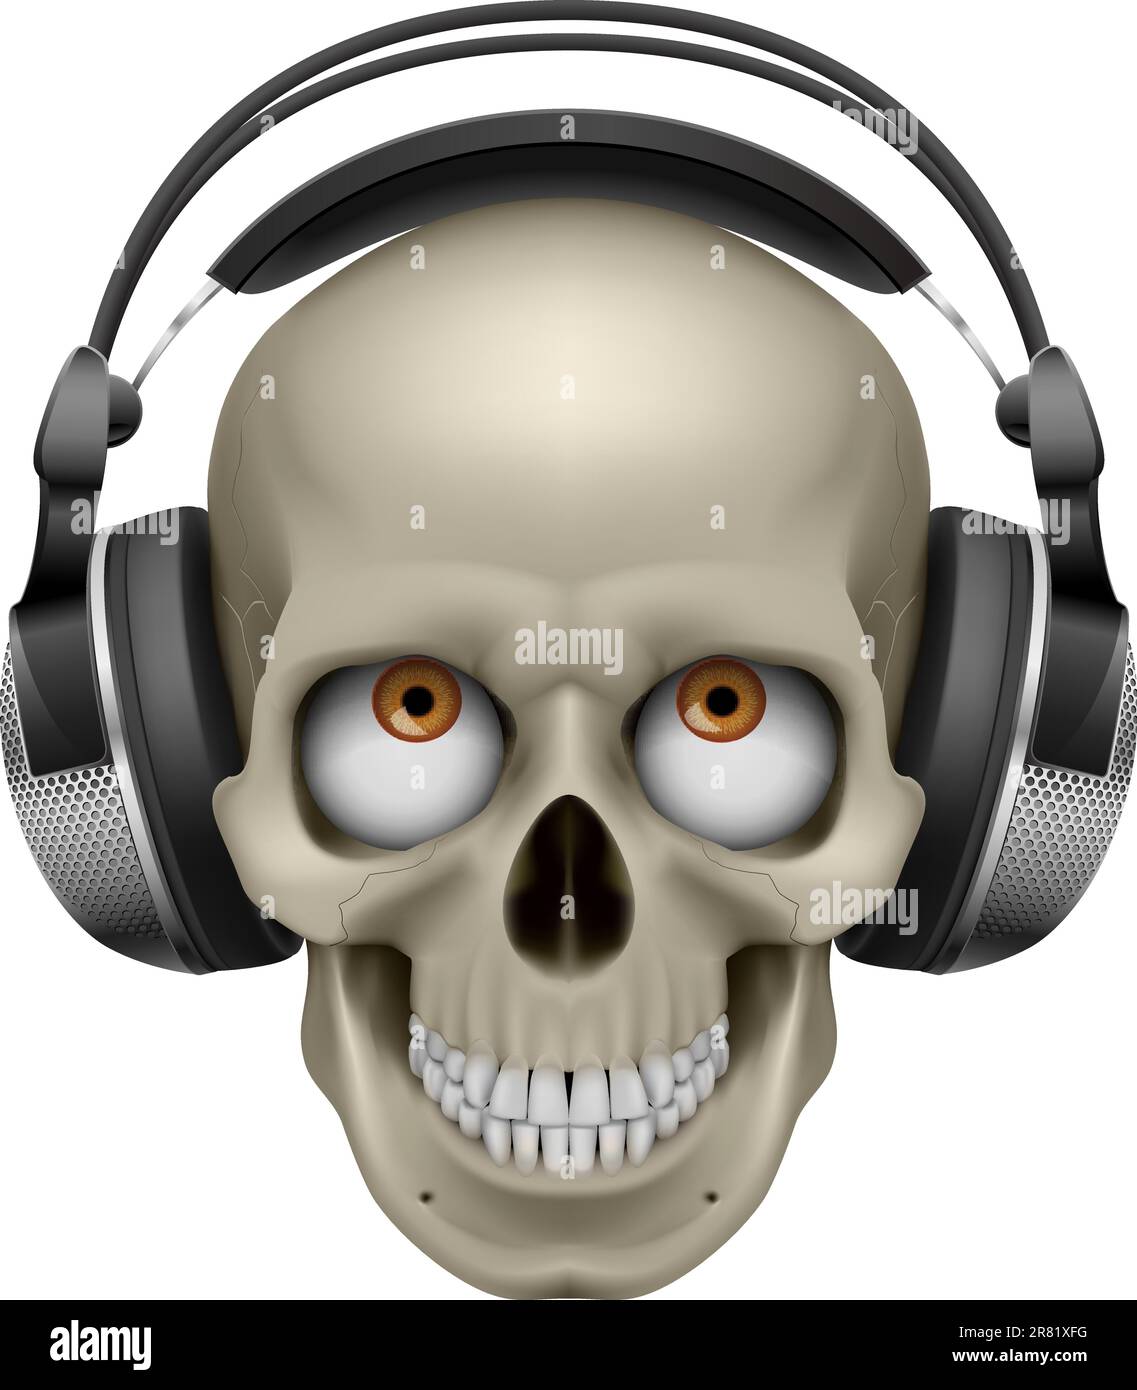 Cranio umano con occhio e cuffie per musica. Illustrazione su bianco Illustrazione Vettoriale